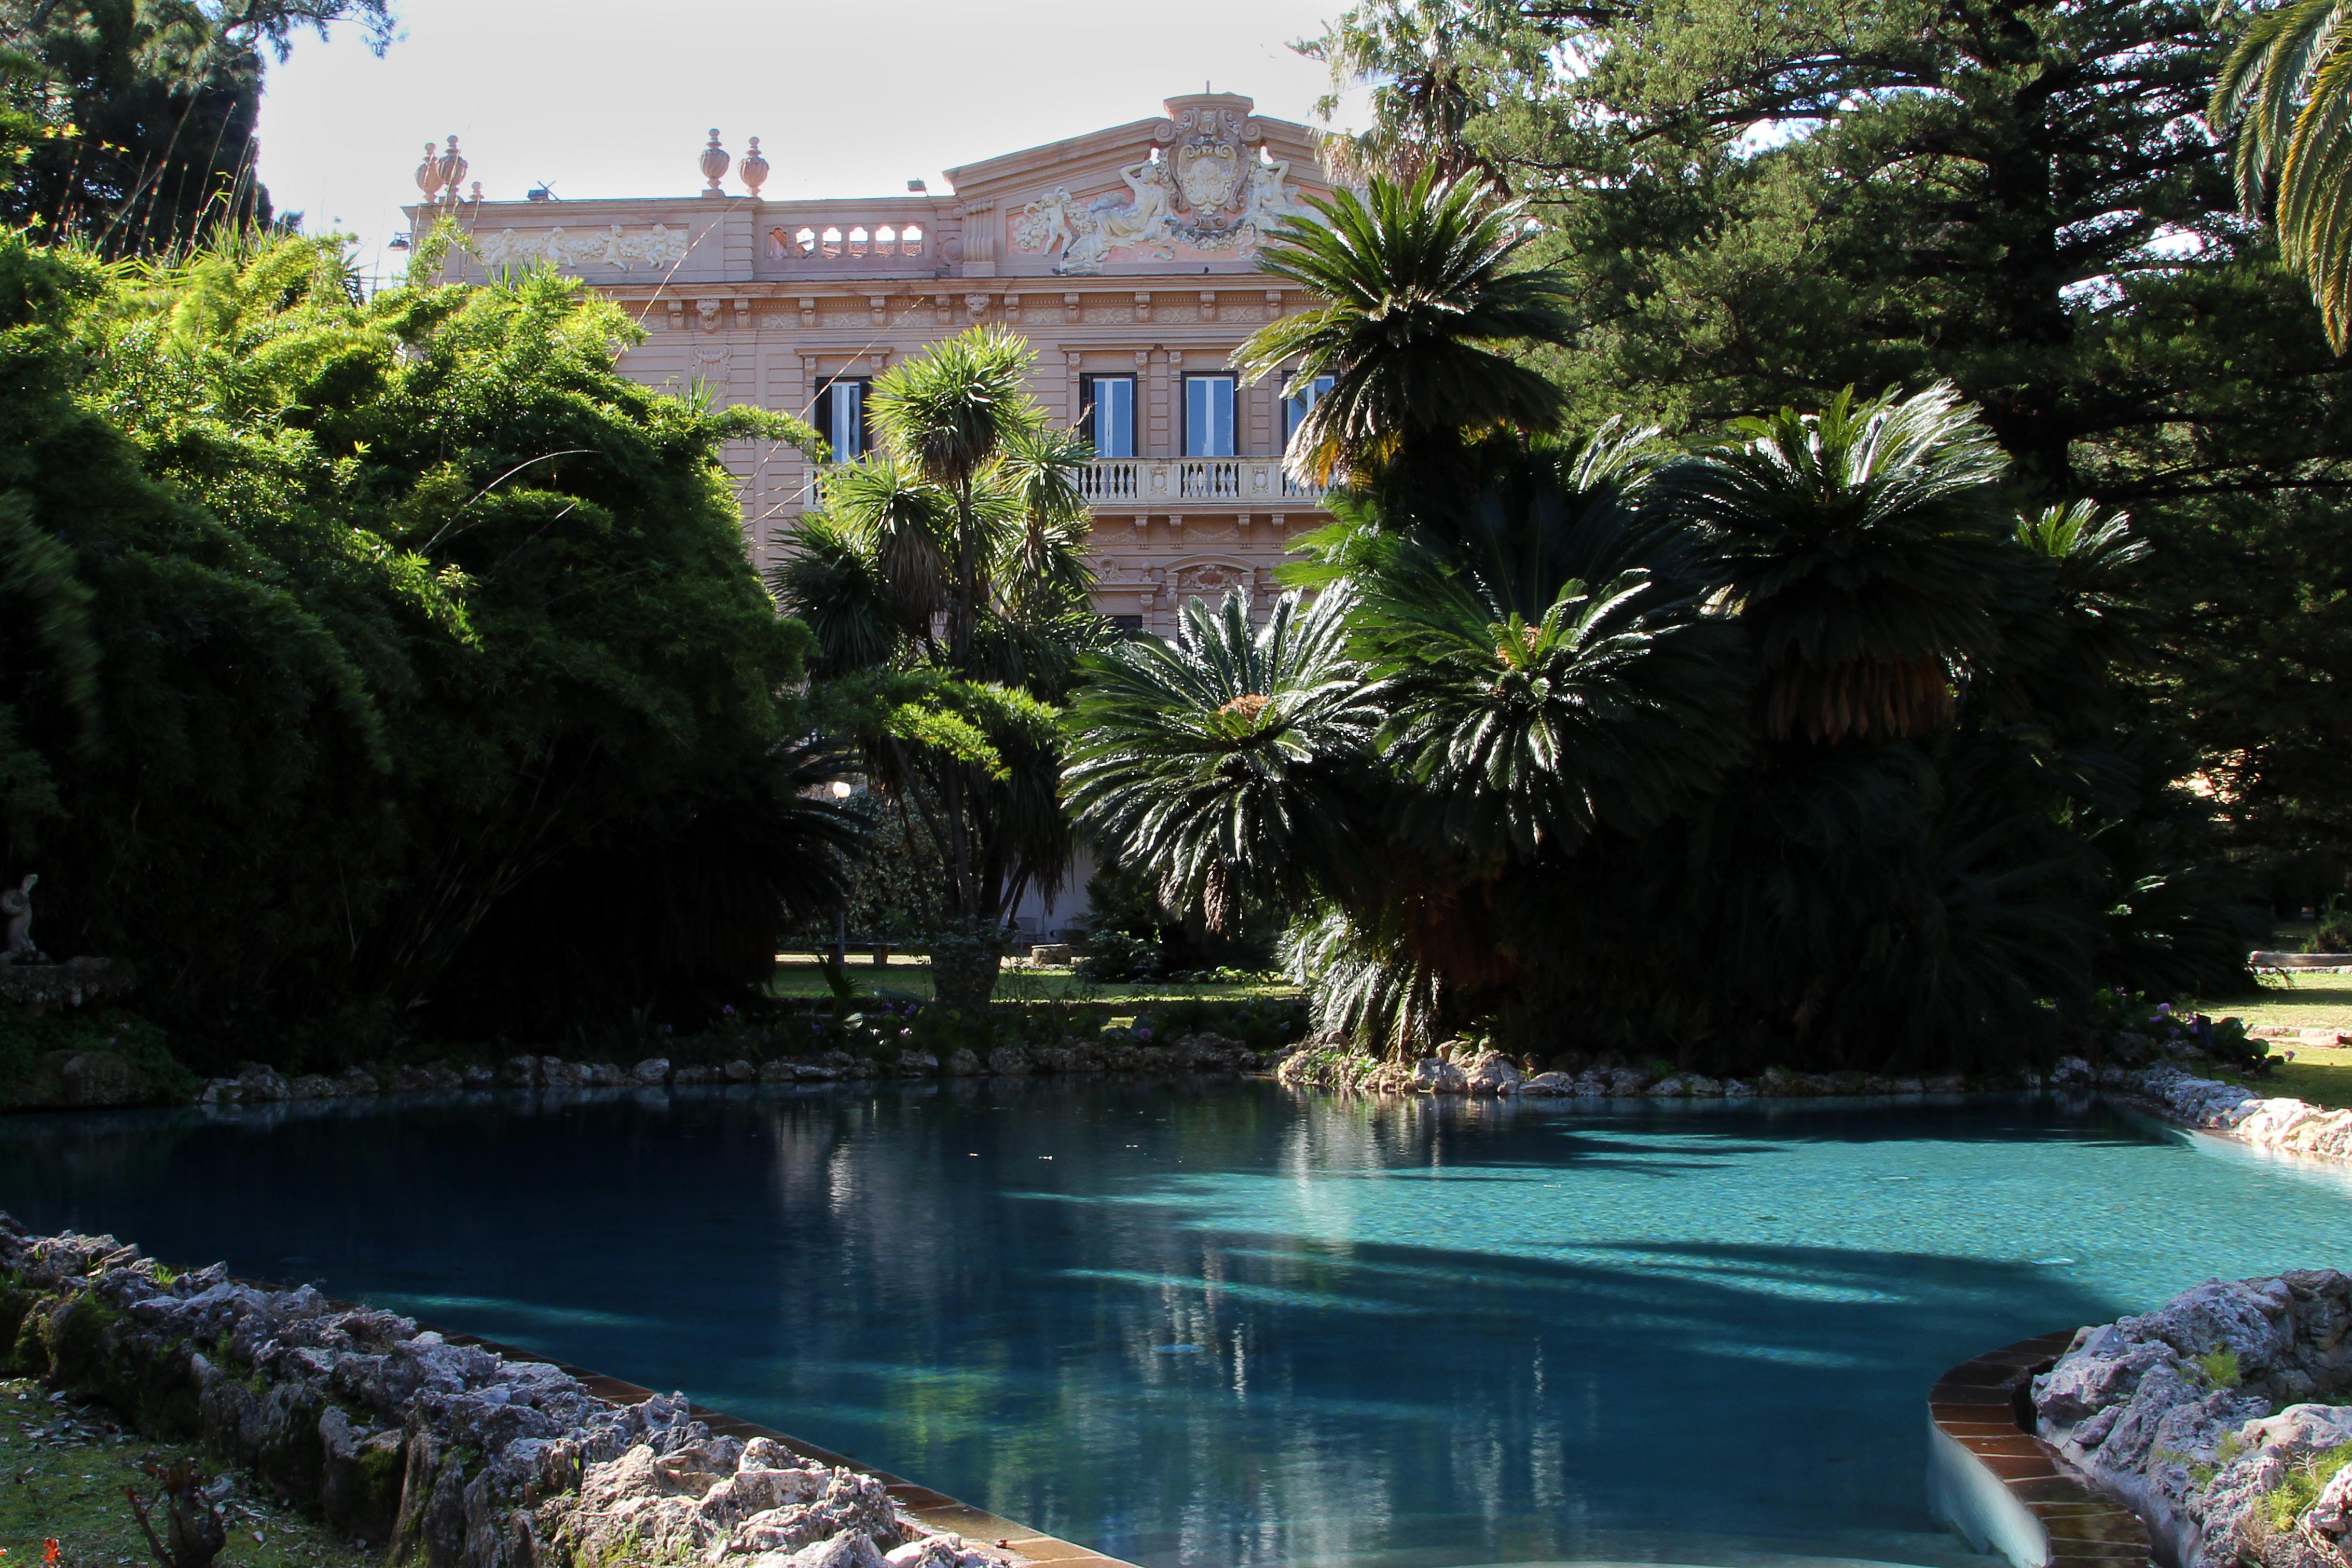 Villa Tasca d'Almerita, Sicilia (Foto dell’archivio Grandi Giardini Italiani)